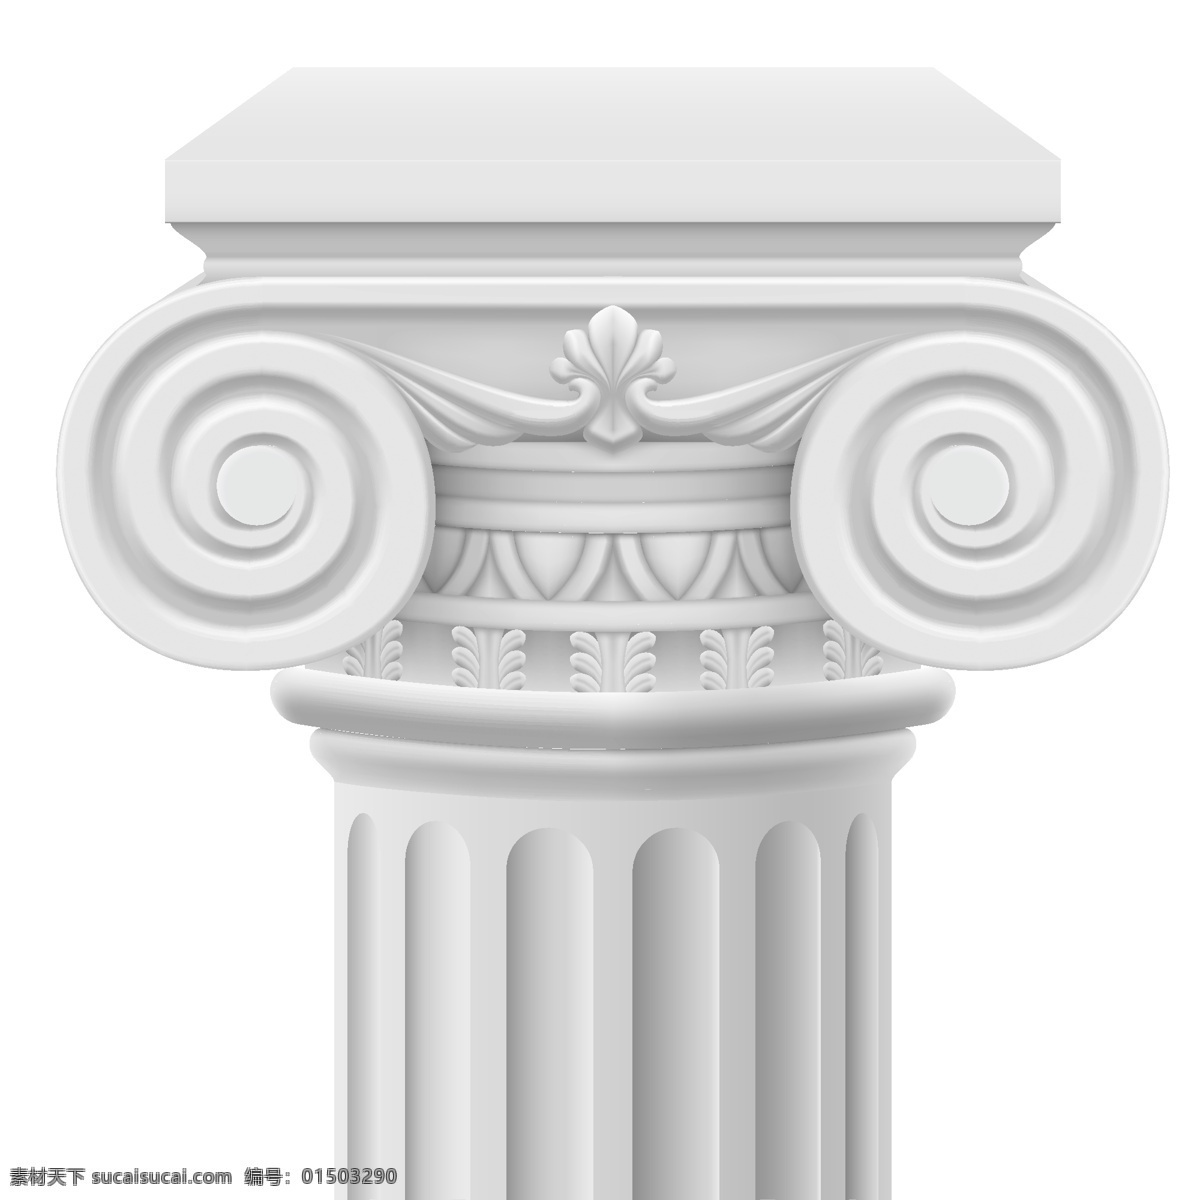 洁白 美丽 罗马柱 洁白美丽 柱子 建筑 生活百科 矢量素材 白色